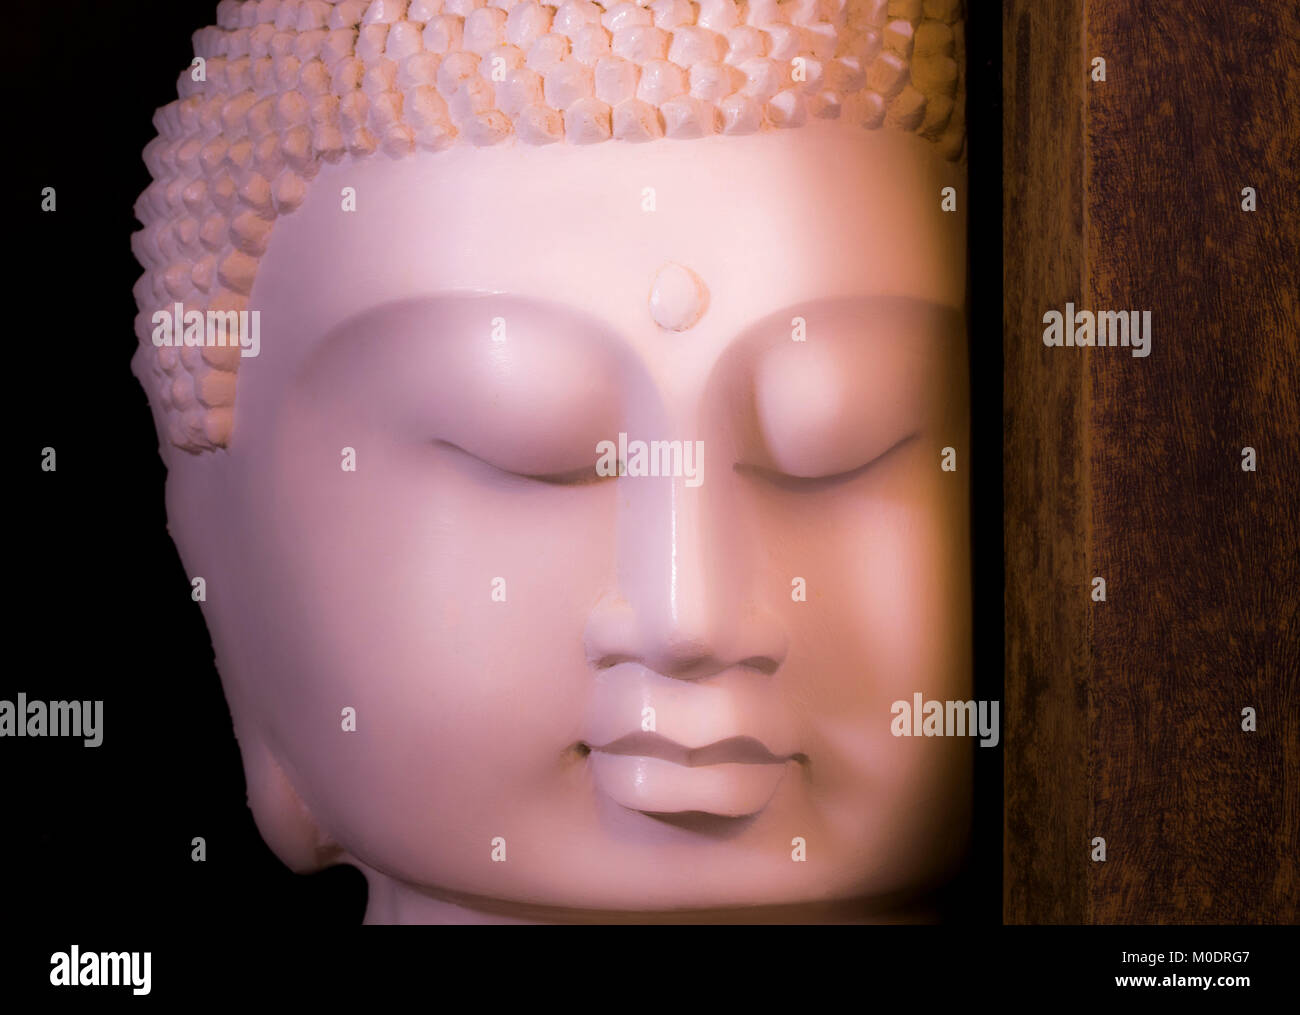 Eine schöne, lebendige Buddha Kopf Ornament auf dem Bildschirm mit realistischen Gesichtszüge und die Augen geschlossen, als ob in der Kontemplation. Die aus Gips angefertigt. Stockfoto